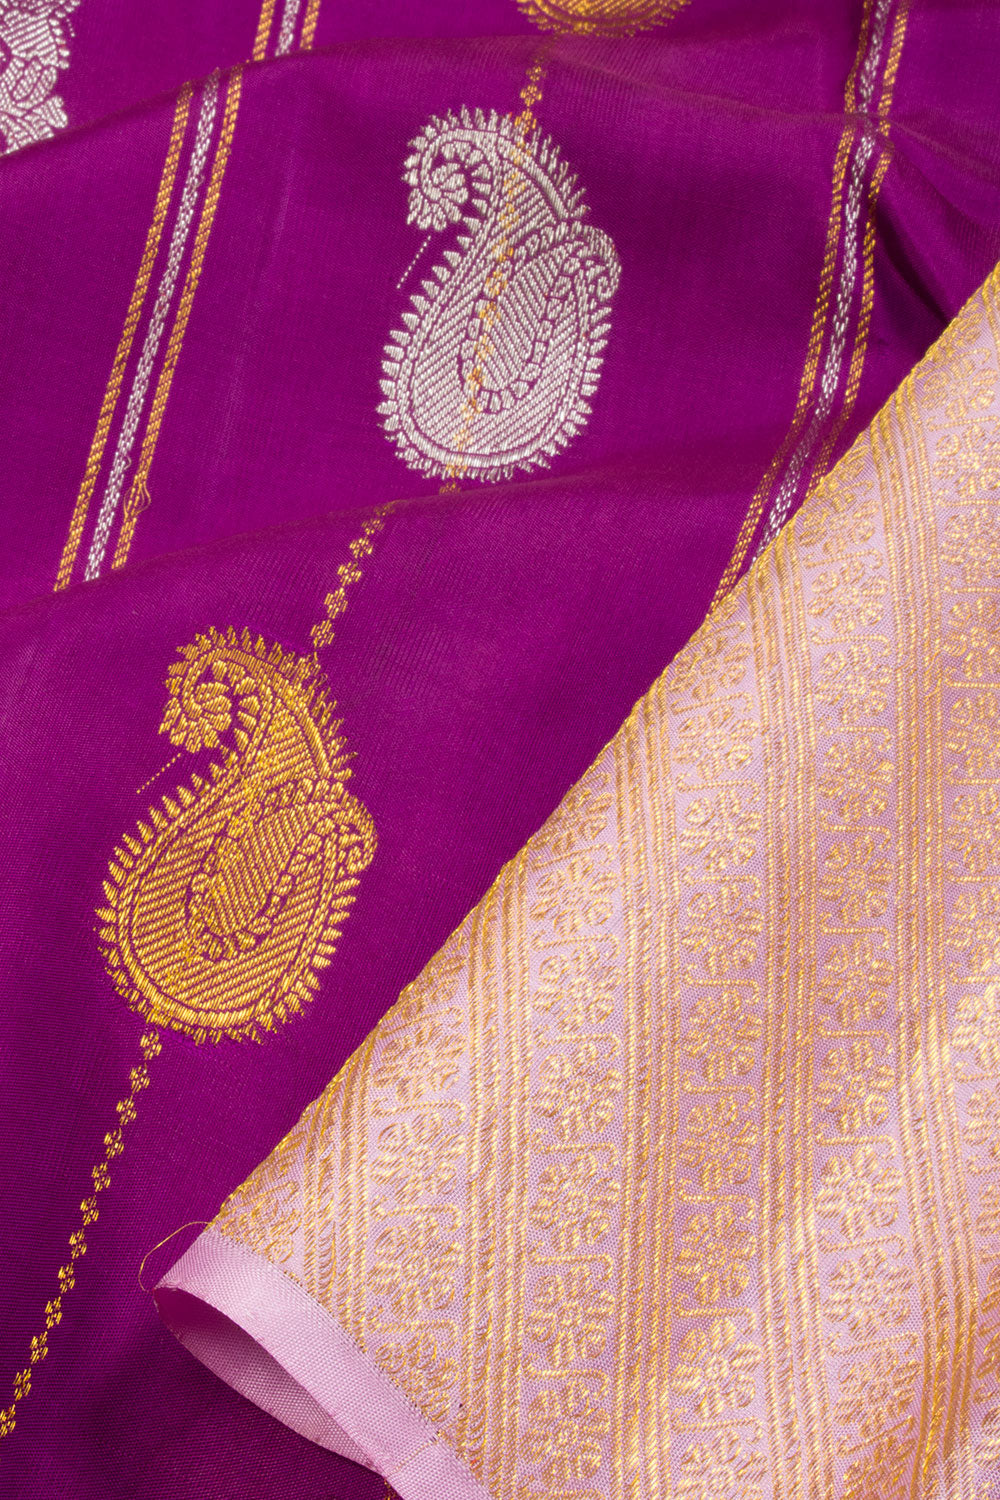 Tyrian Purple Handloom Kanjivaram silk saree - Avishya